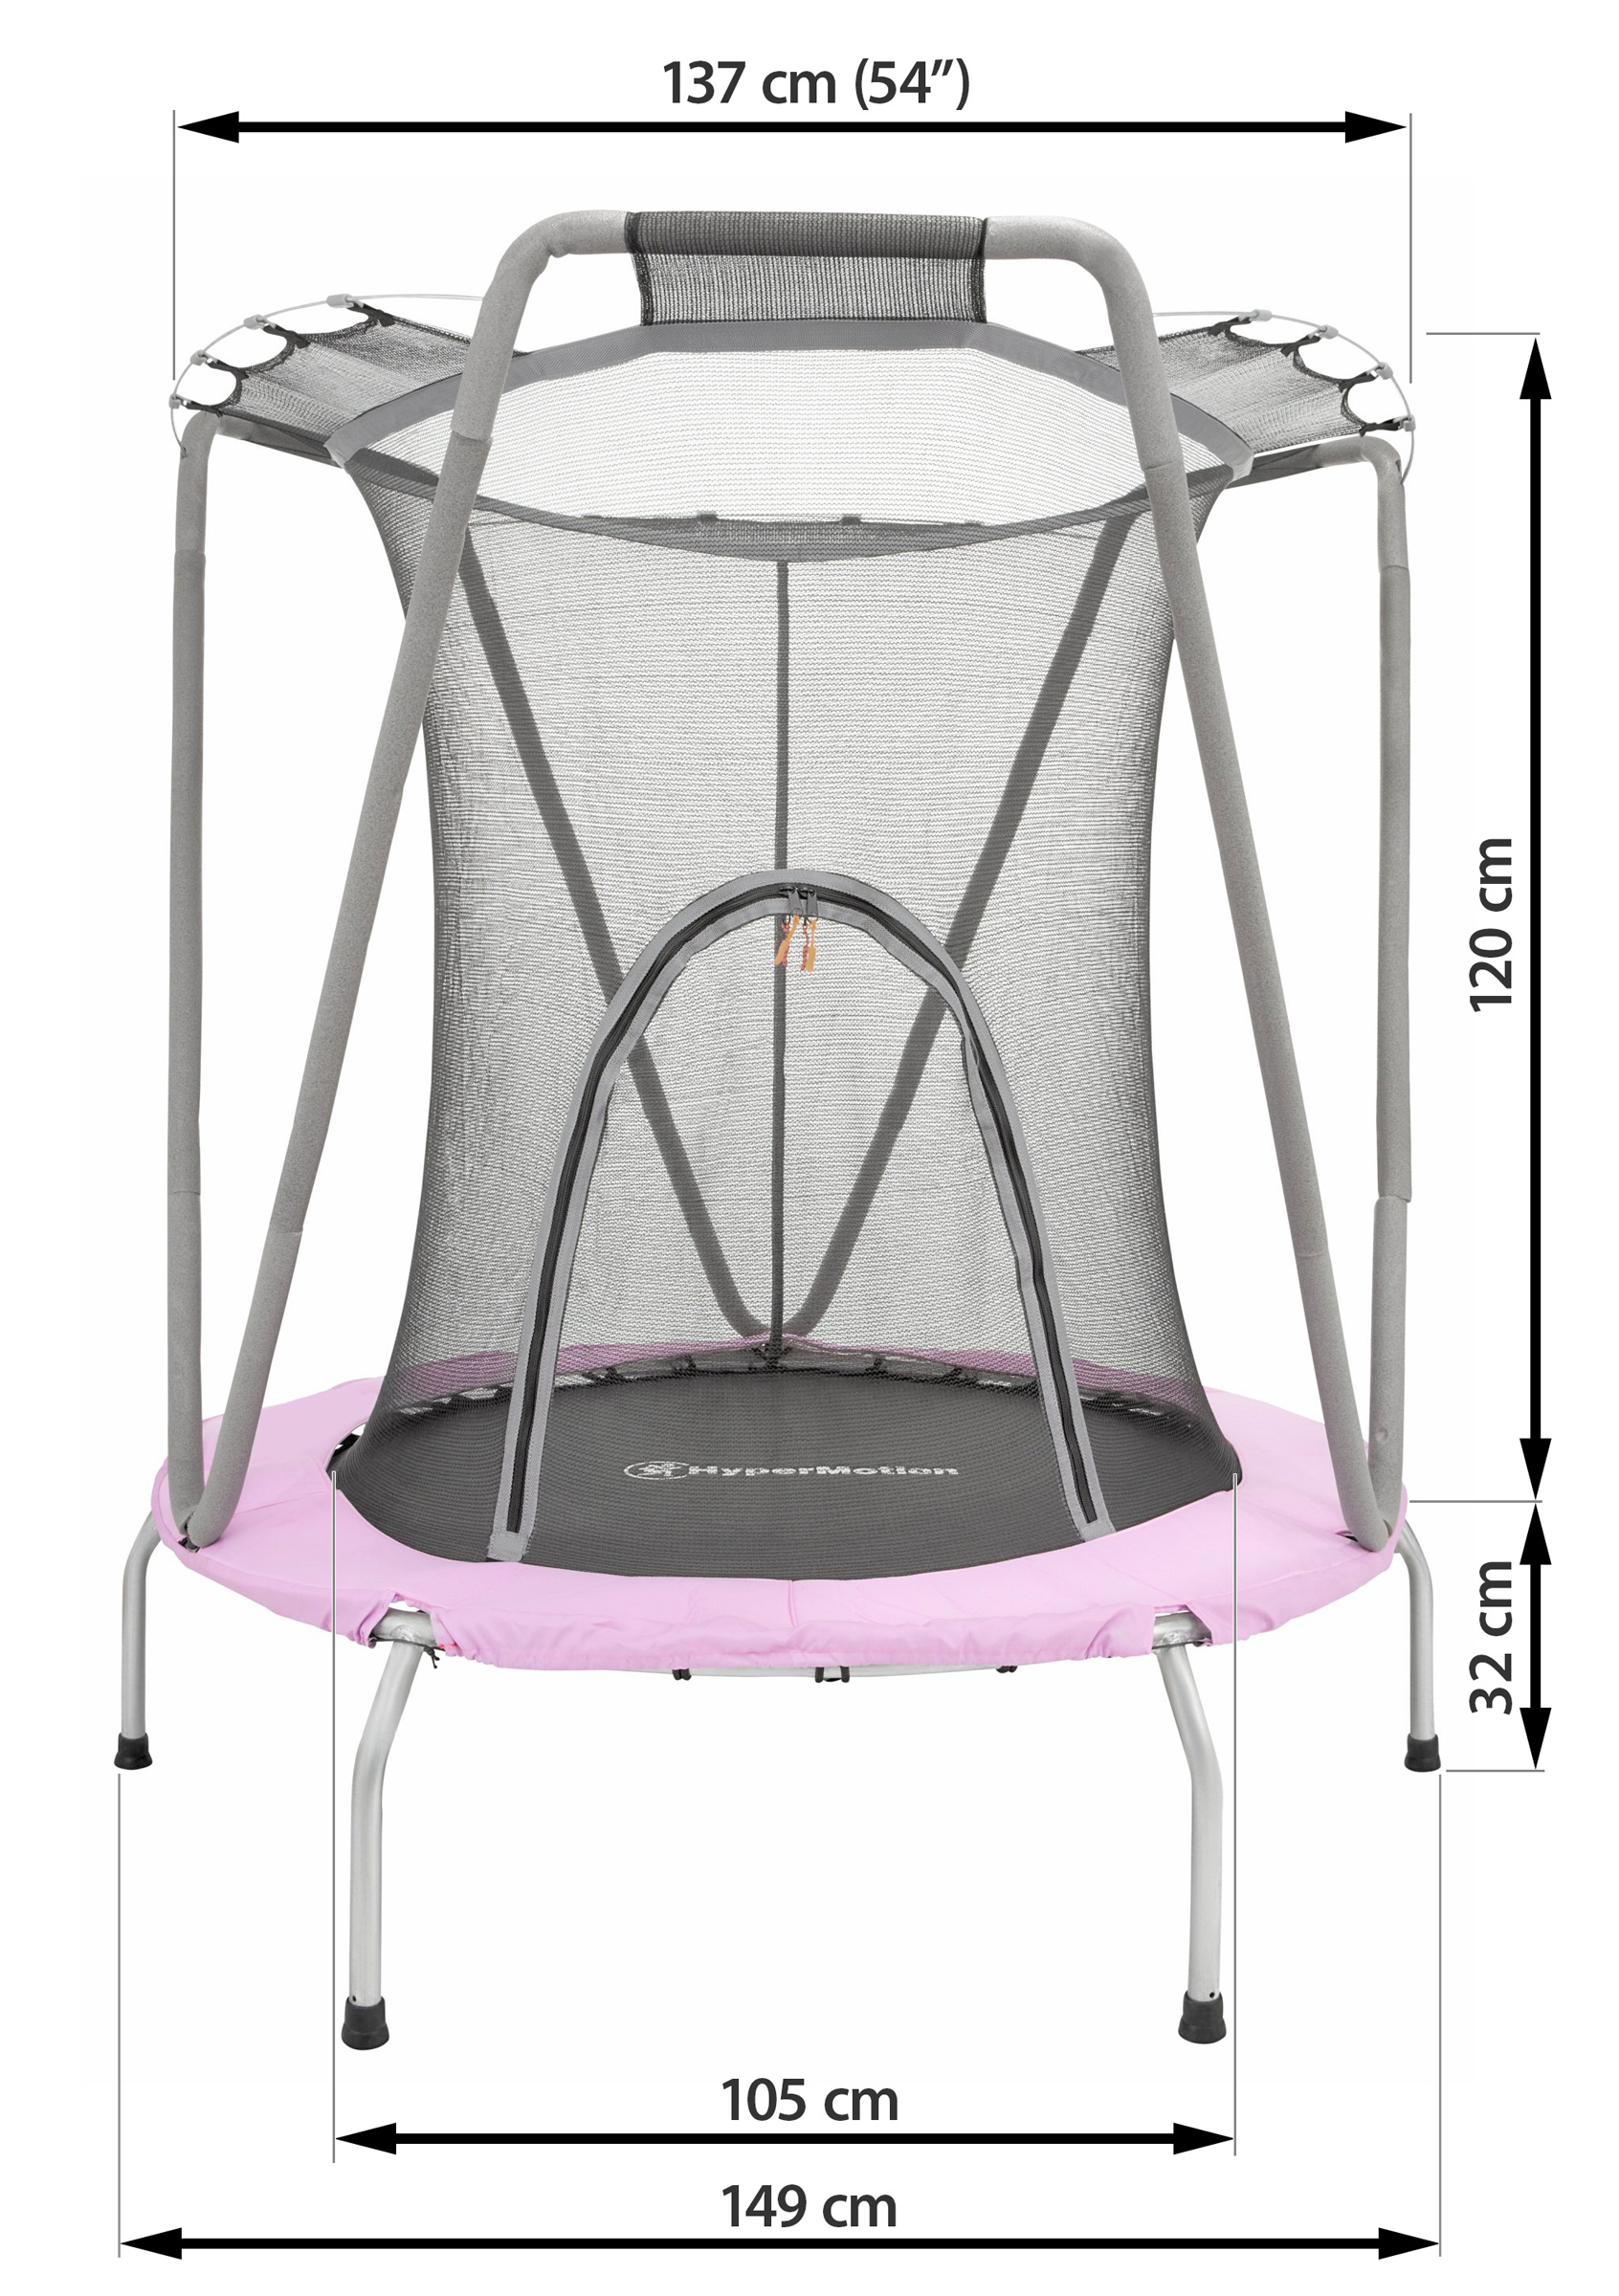 137cm trampolin med sikkerhedsnet - til børn 3-8 år - hus og have | SPORT OG REKREATION |